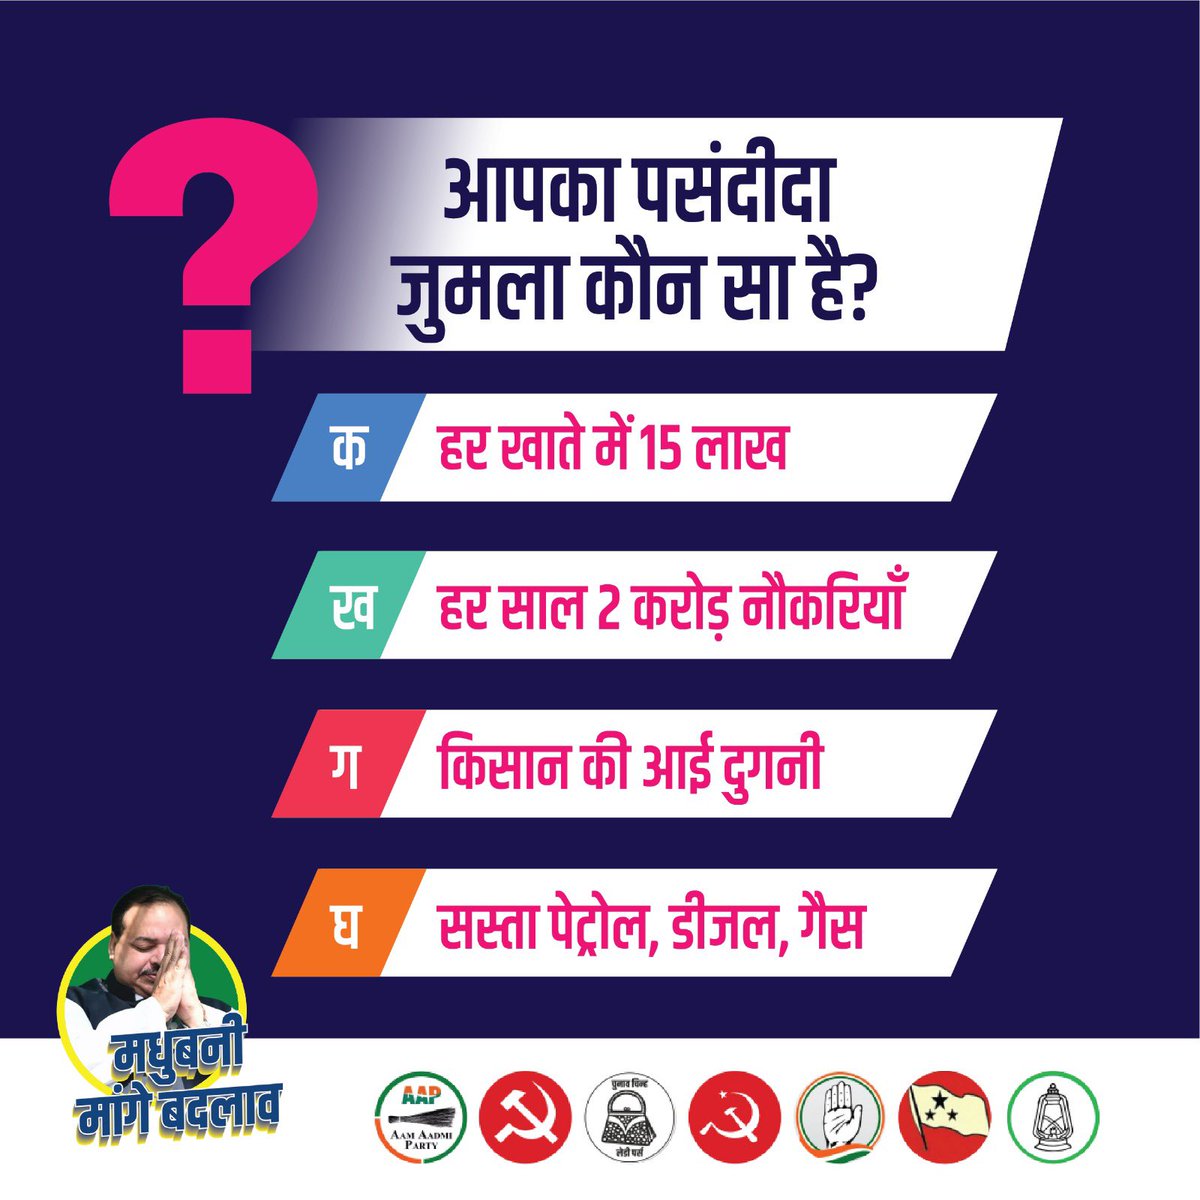 देवियों और सज्जनों, चलिए हम और आप मिलकर खेलते हैं कौन बनेगा करोड़पति....जुमला स्टाइल !!! 
कमेंट करके अपना जवाब बताएं...

#मधुबनी_मांगे_बदलाव #INDIAAlliance #Jumla #LokSabhaElection2024 #Biharpolitics #RJD #TejashwiYadav #Congress